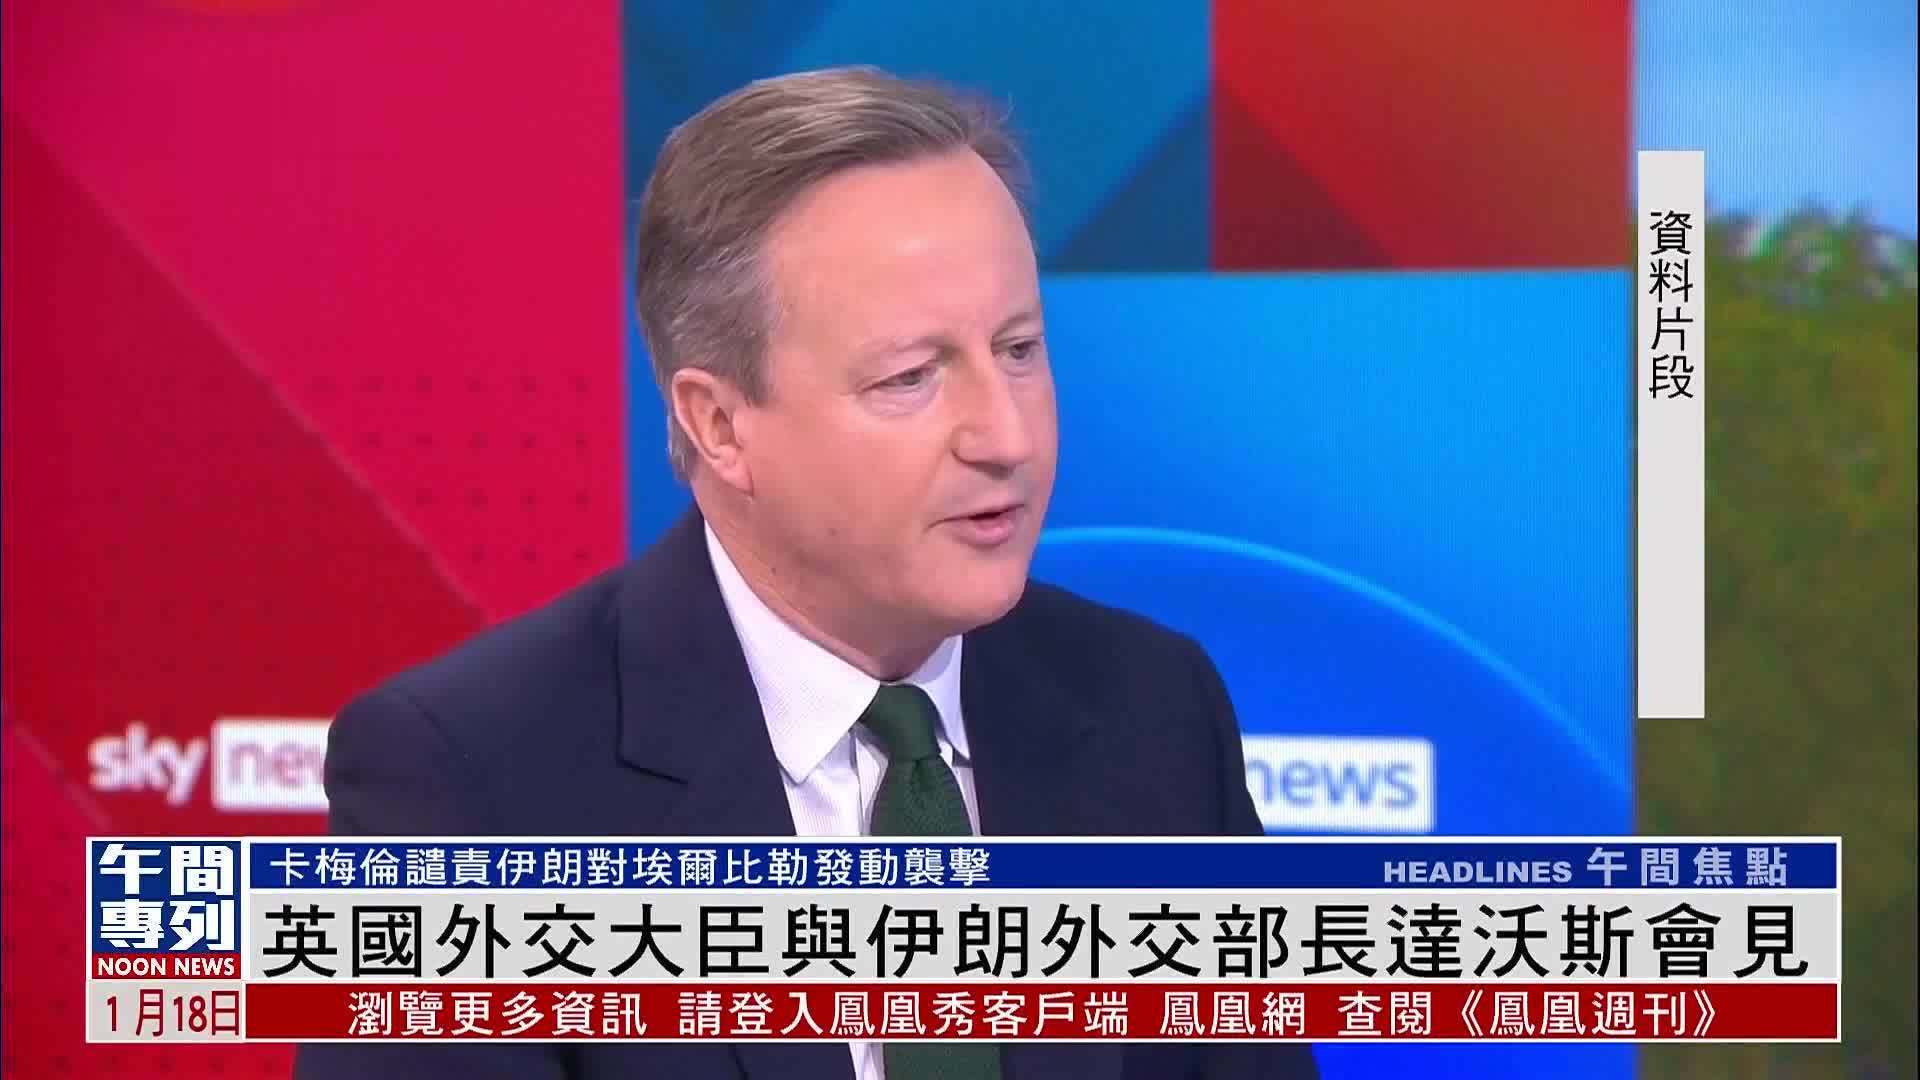 英国新外交大臣将与中国就朝鲜与双边贸易问题进行磋商 - 2018年7月30日, 俄罗斯卫星通讯社